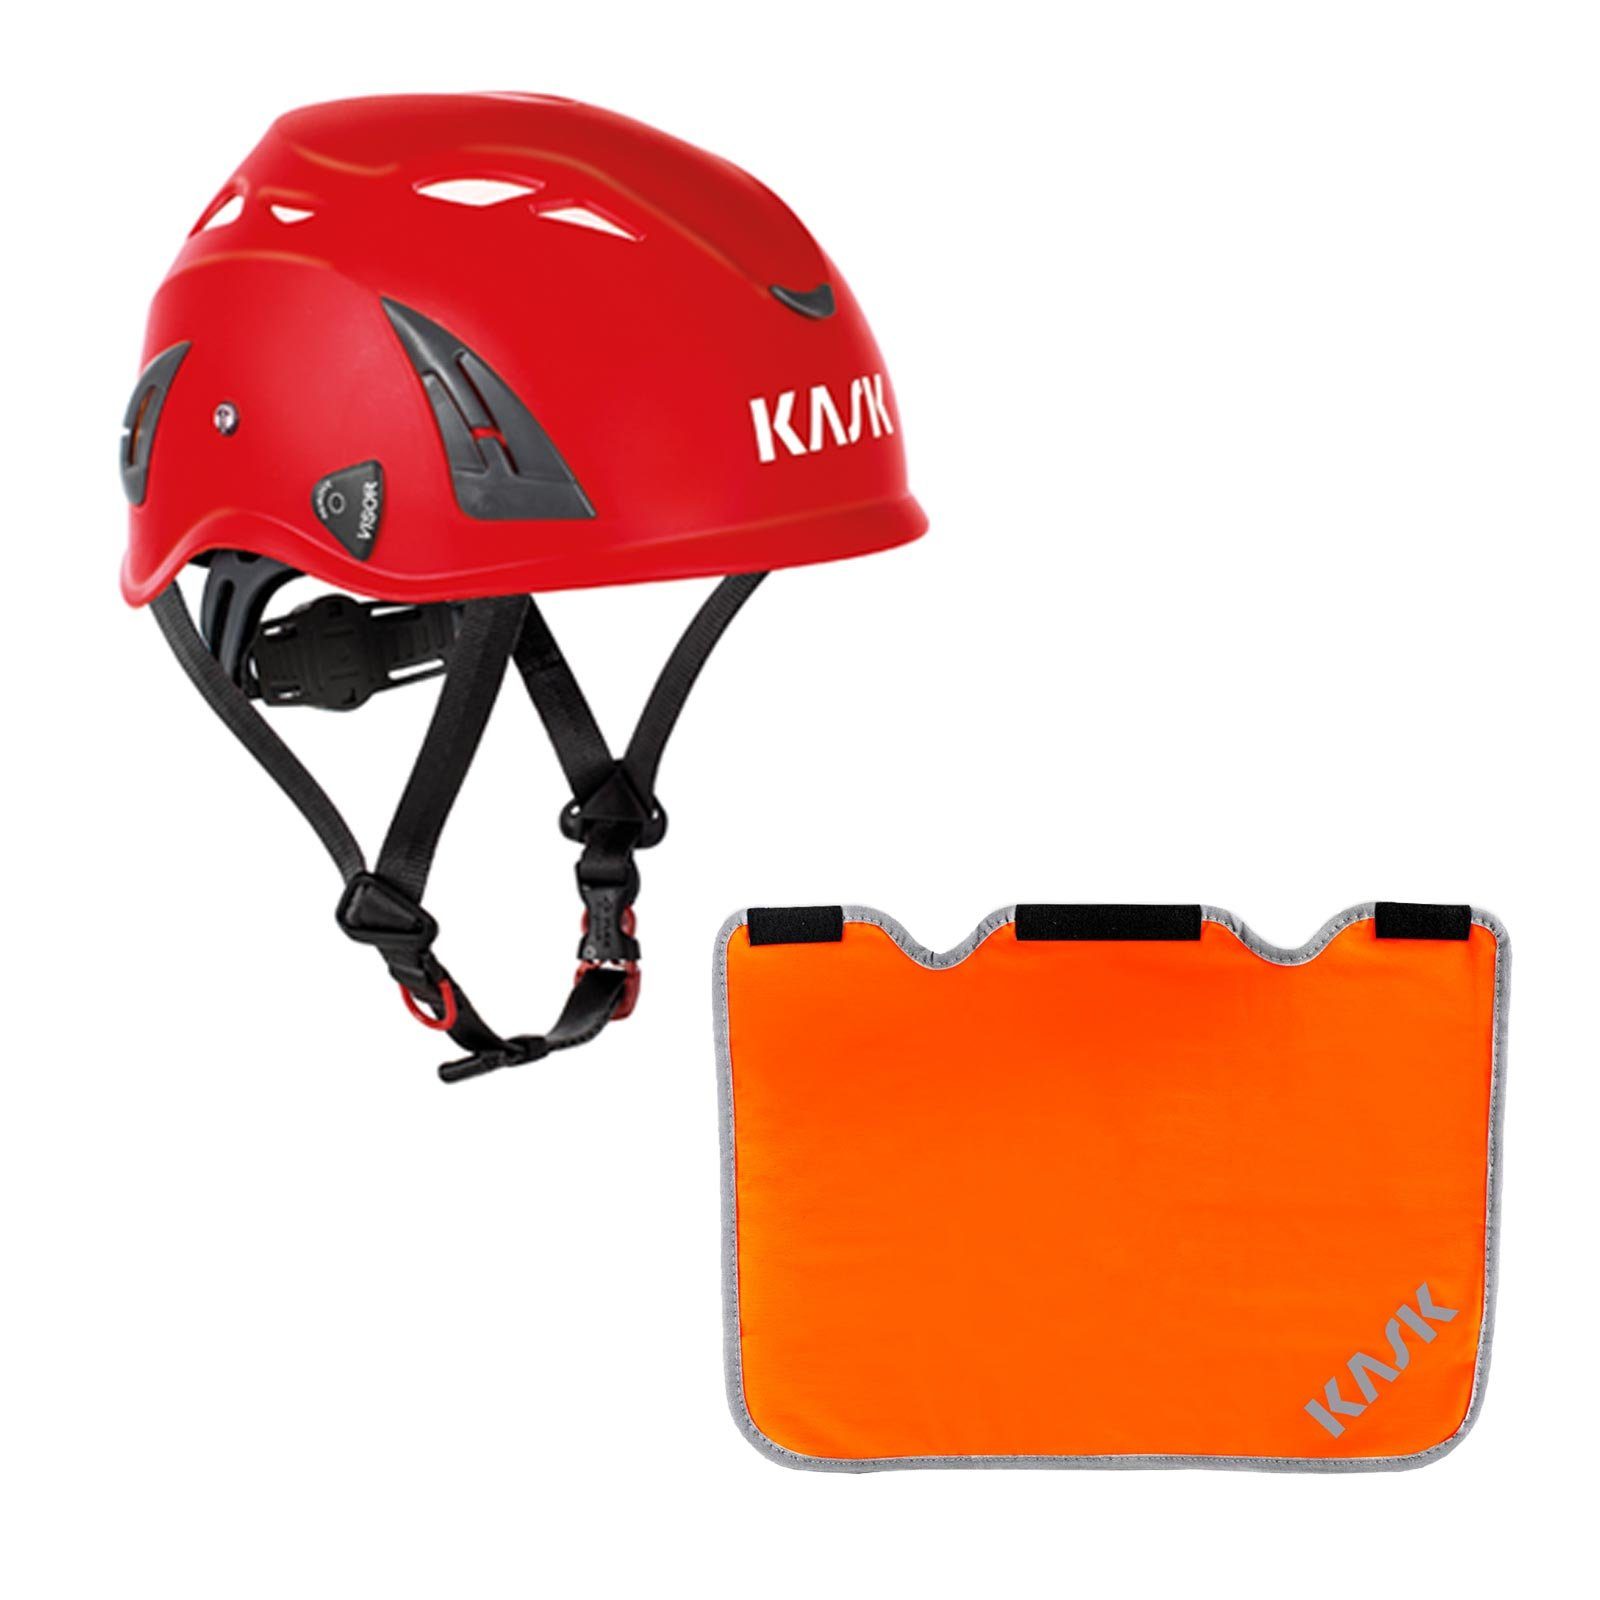 Kask Schutzhelm Plasma AQ Arbeitsschutzhelm + Nackenschutz orange mit BG Bau Förderung rot